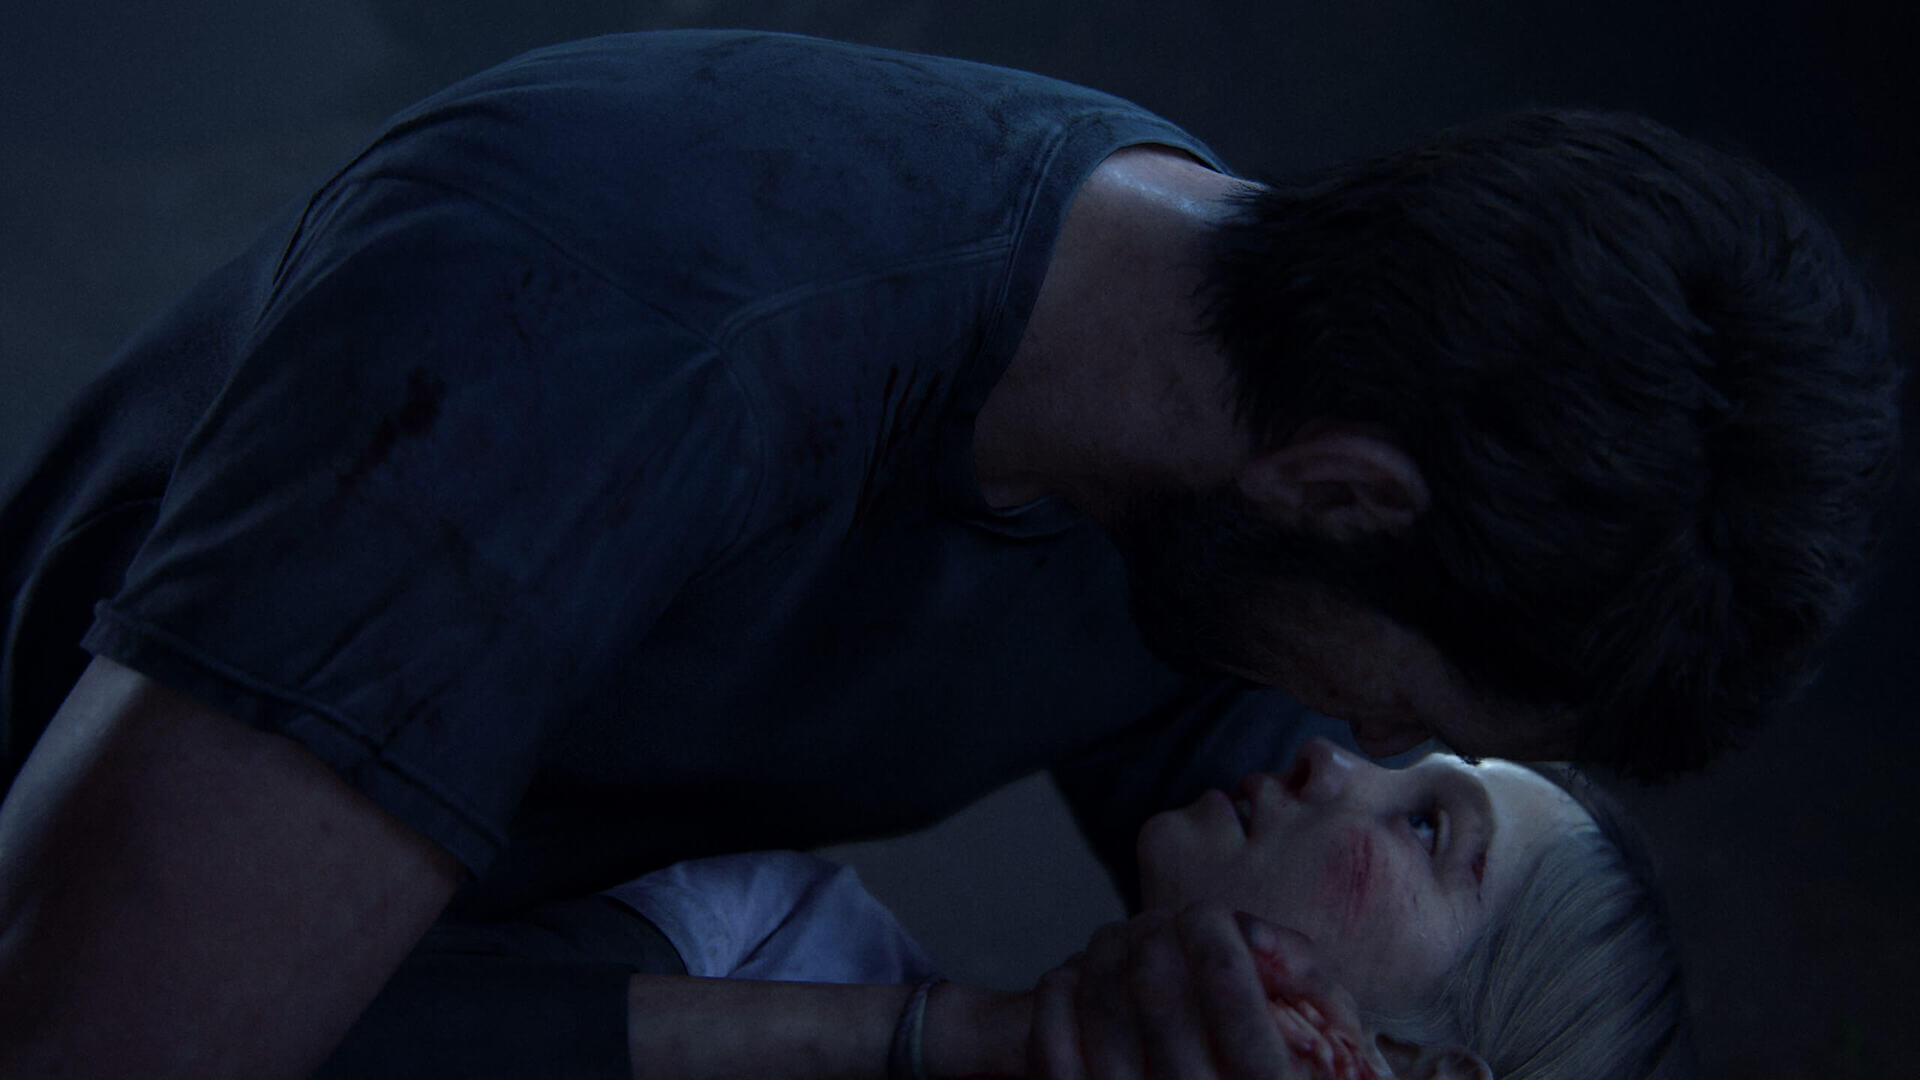 The Last of Us para PC é o jogo da Naughty Dog com a pior nota no Metacritic